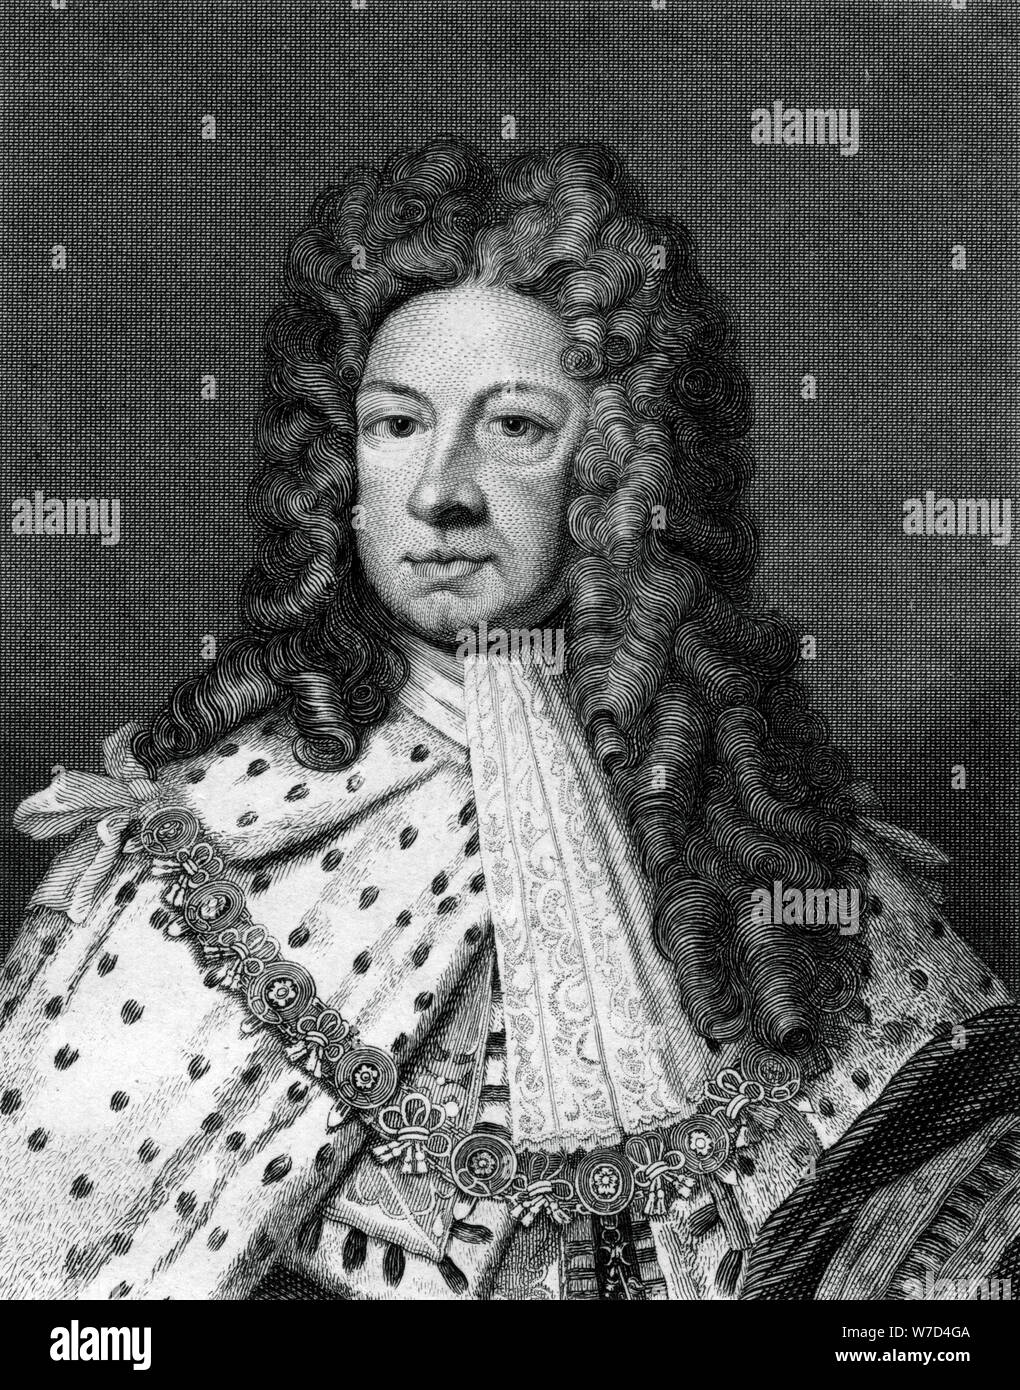 Jorge I de Gran Bretaña.Artista: Worthington Foto de stock